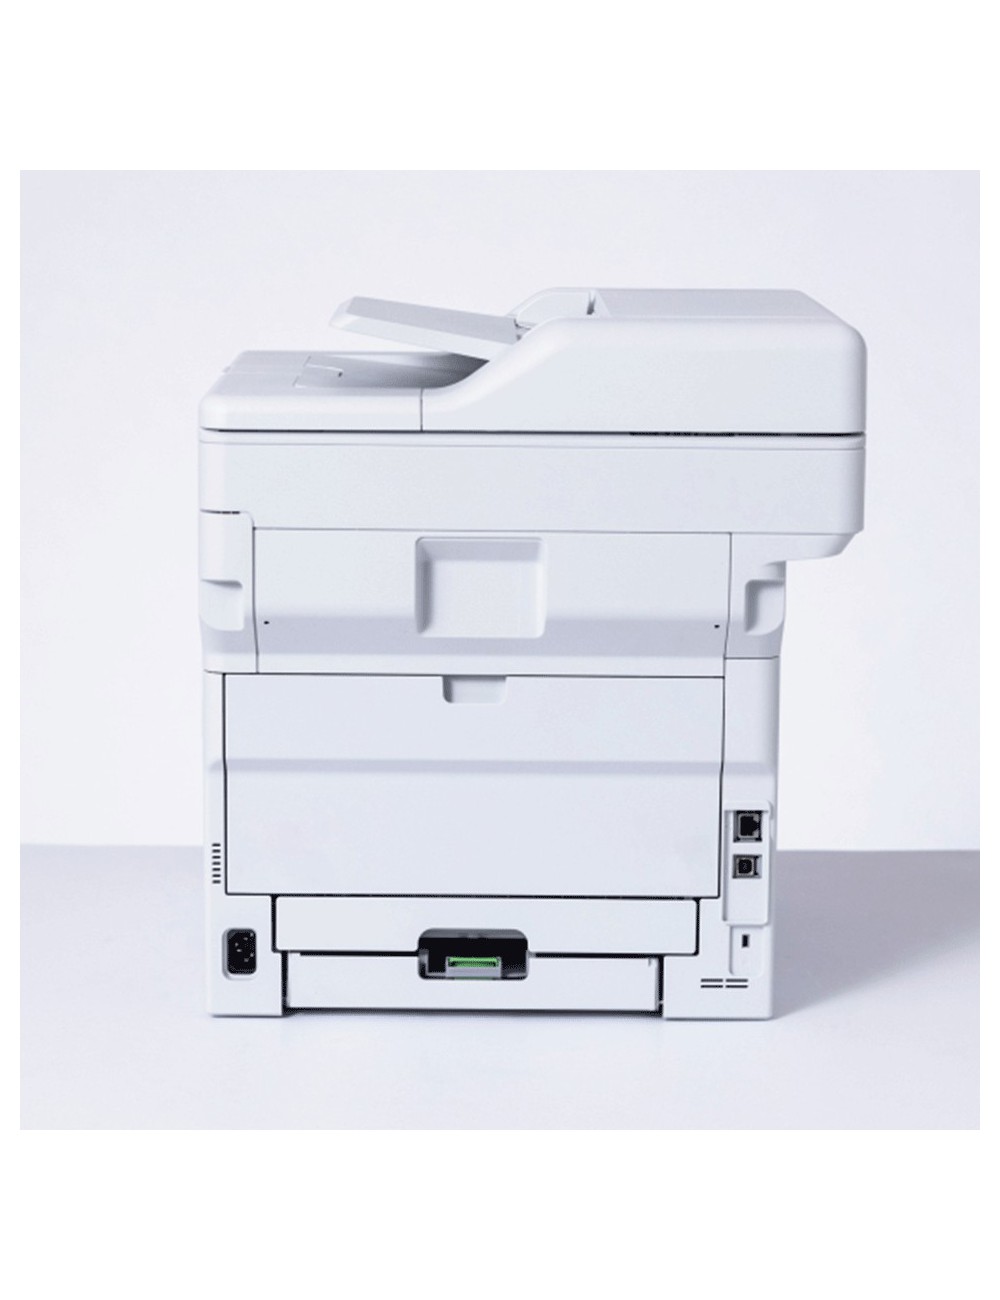 Brother MFC-L5710DN impresora multifunción Laser A4 1200 x 1200 DPI 48 ppm